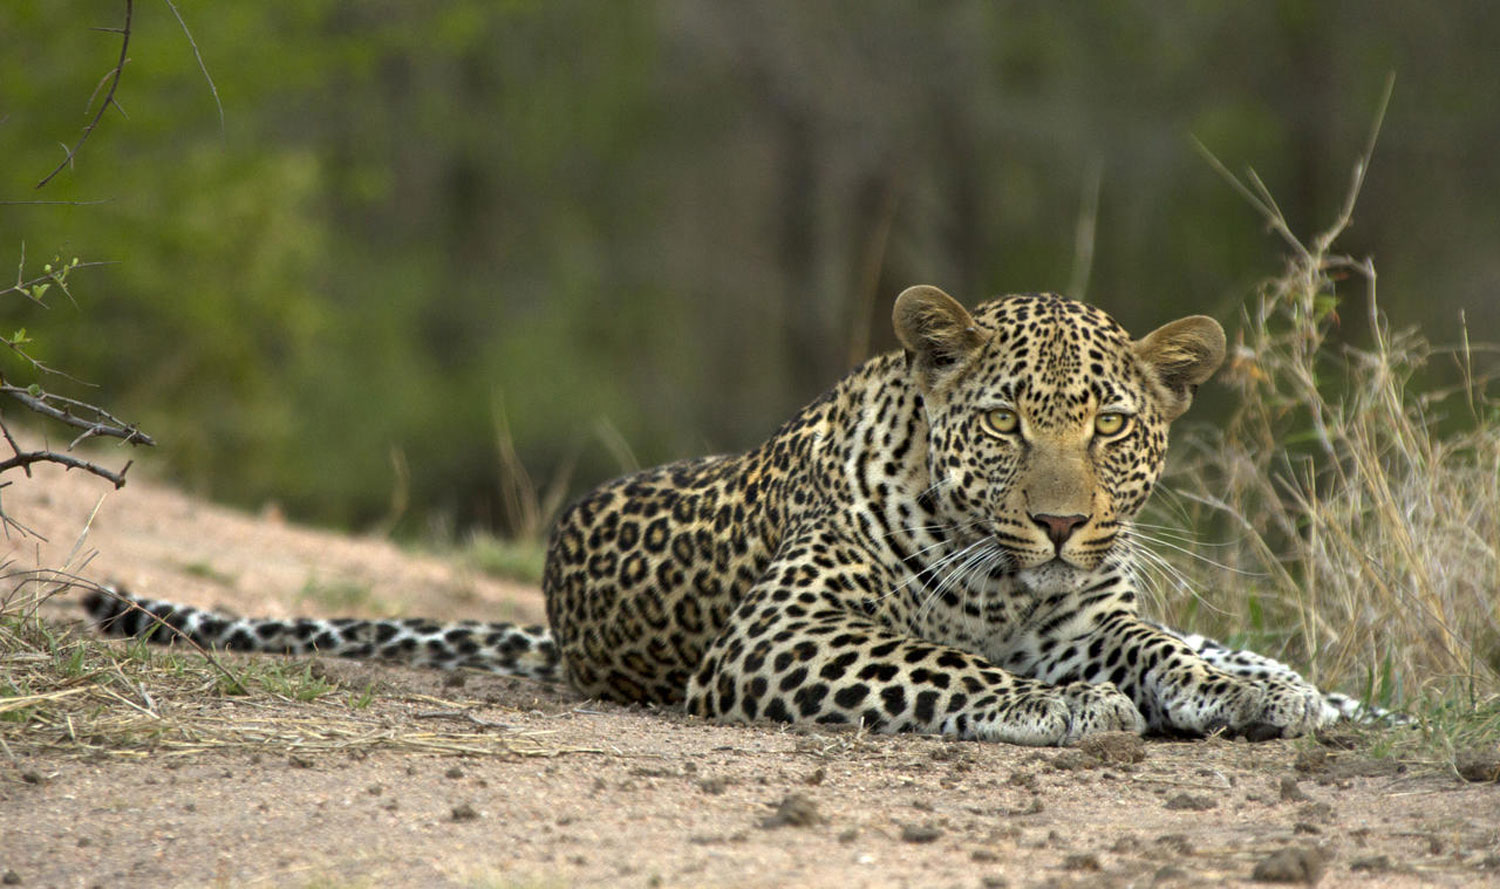 Enactus South Africa Safari Kruger8.jpg